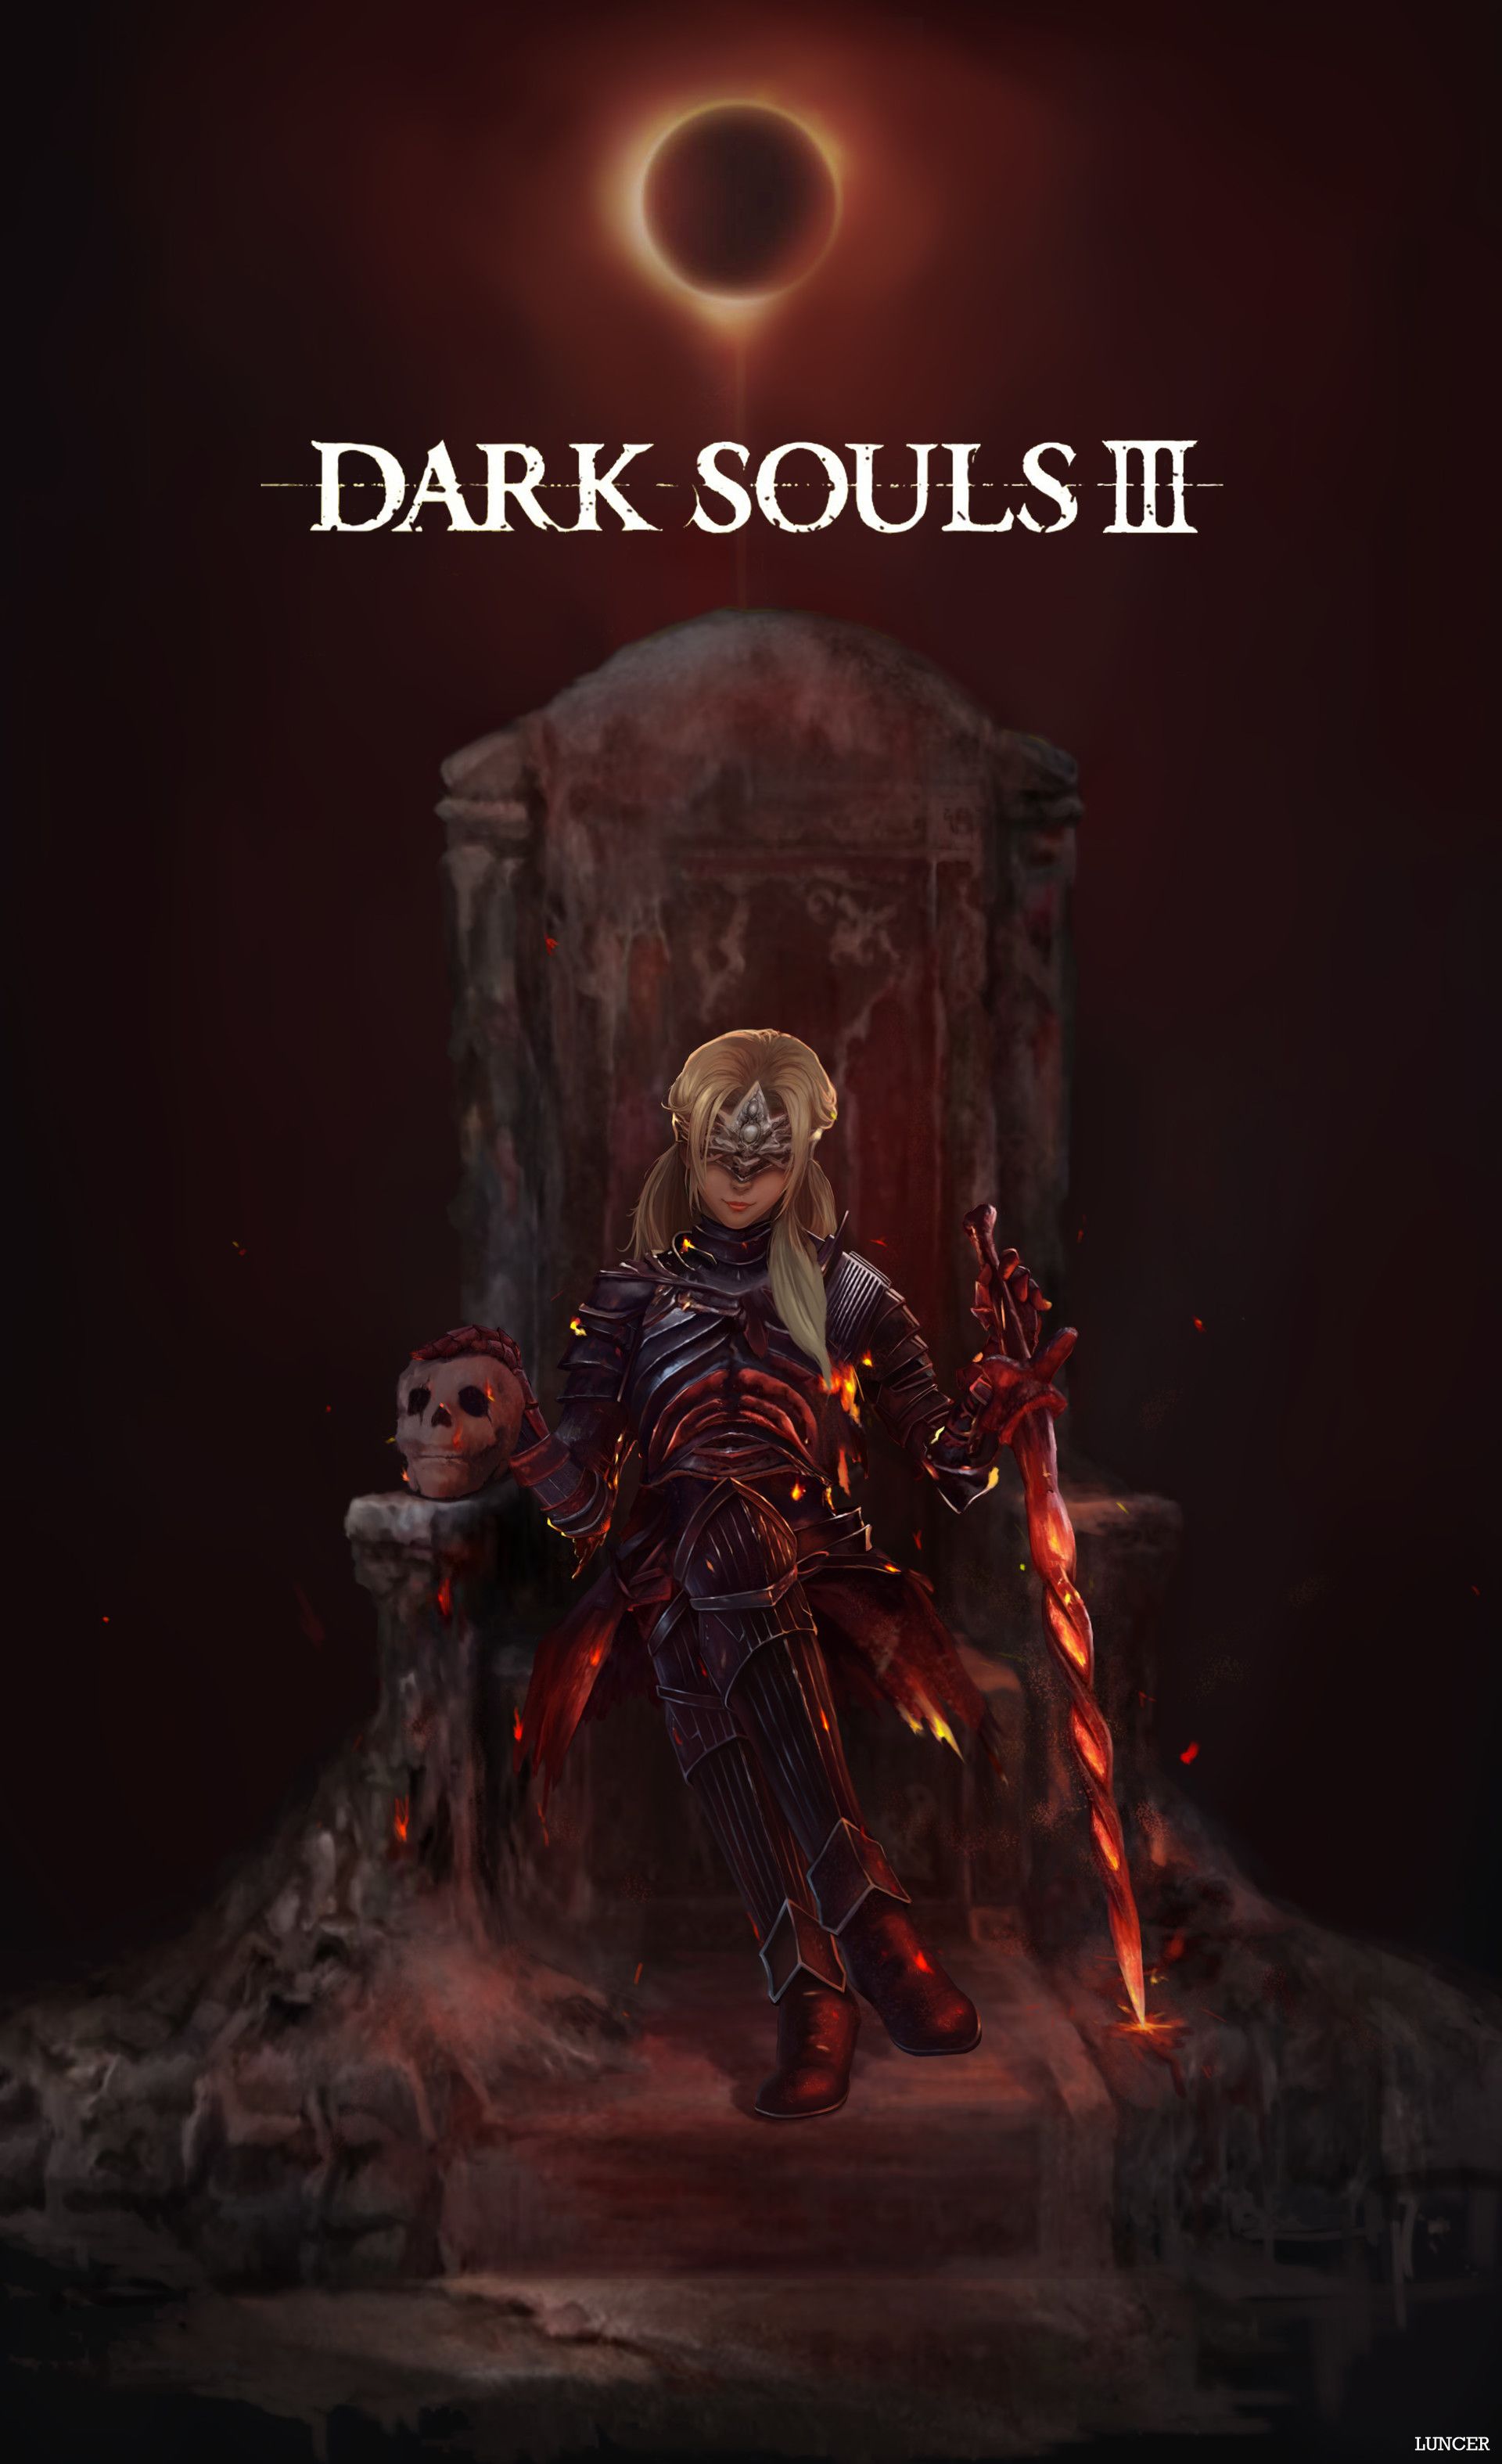 Best Fire Keeper image. dark souls, dark souls dark souls art